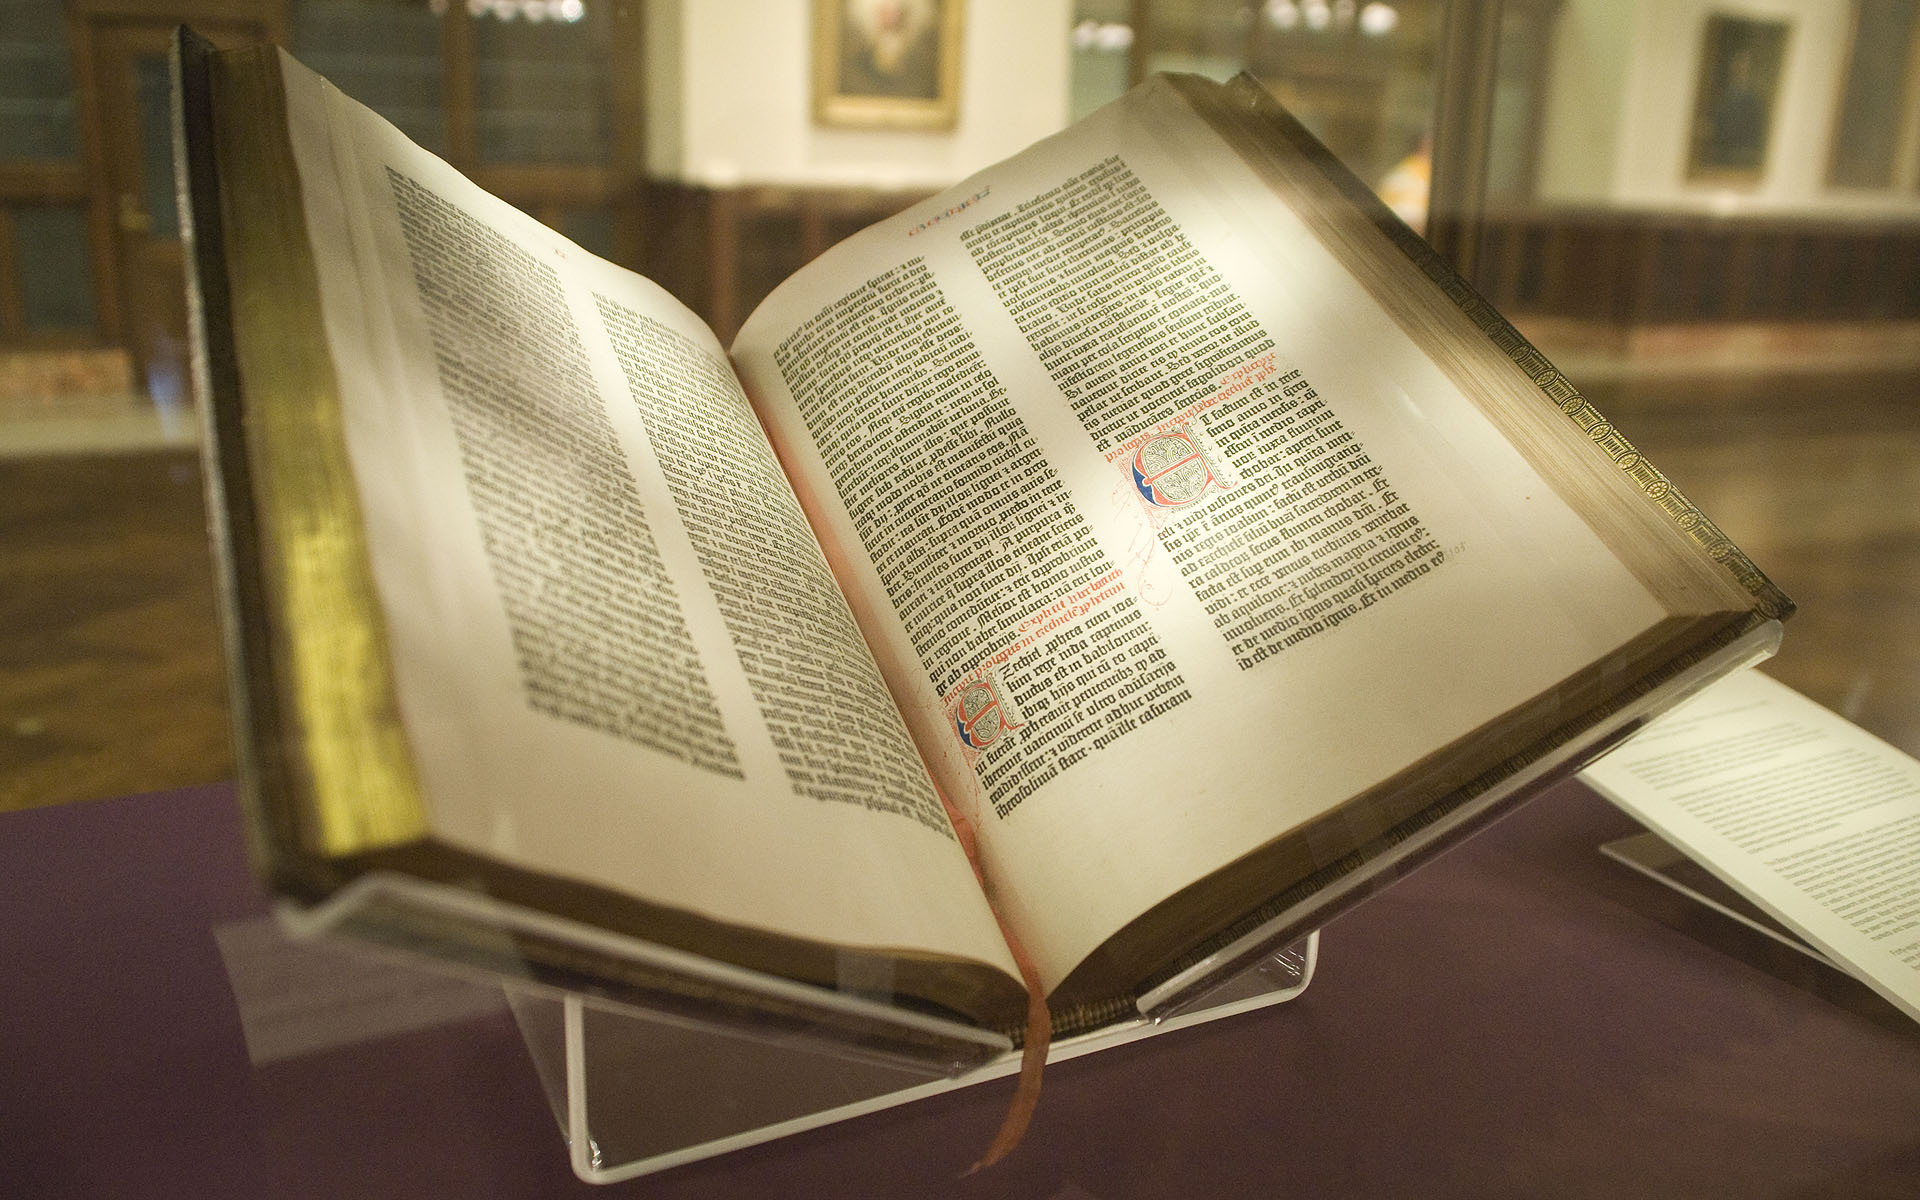 古騰堡聖經。印刷術和《聖經》新版翻譯的推出，沉重動搖了教會的釋經權。